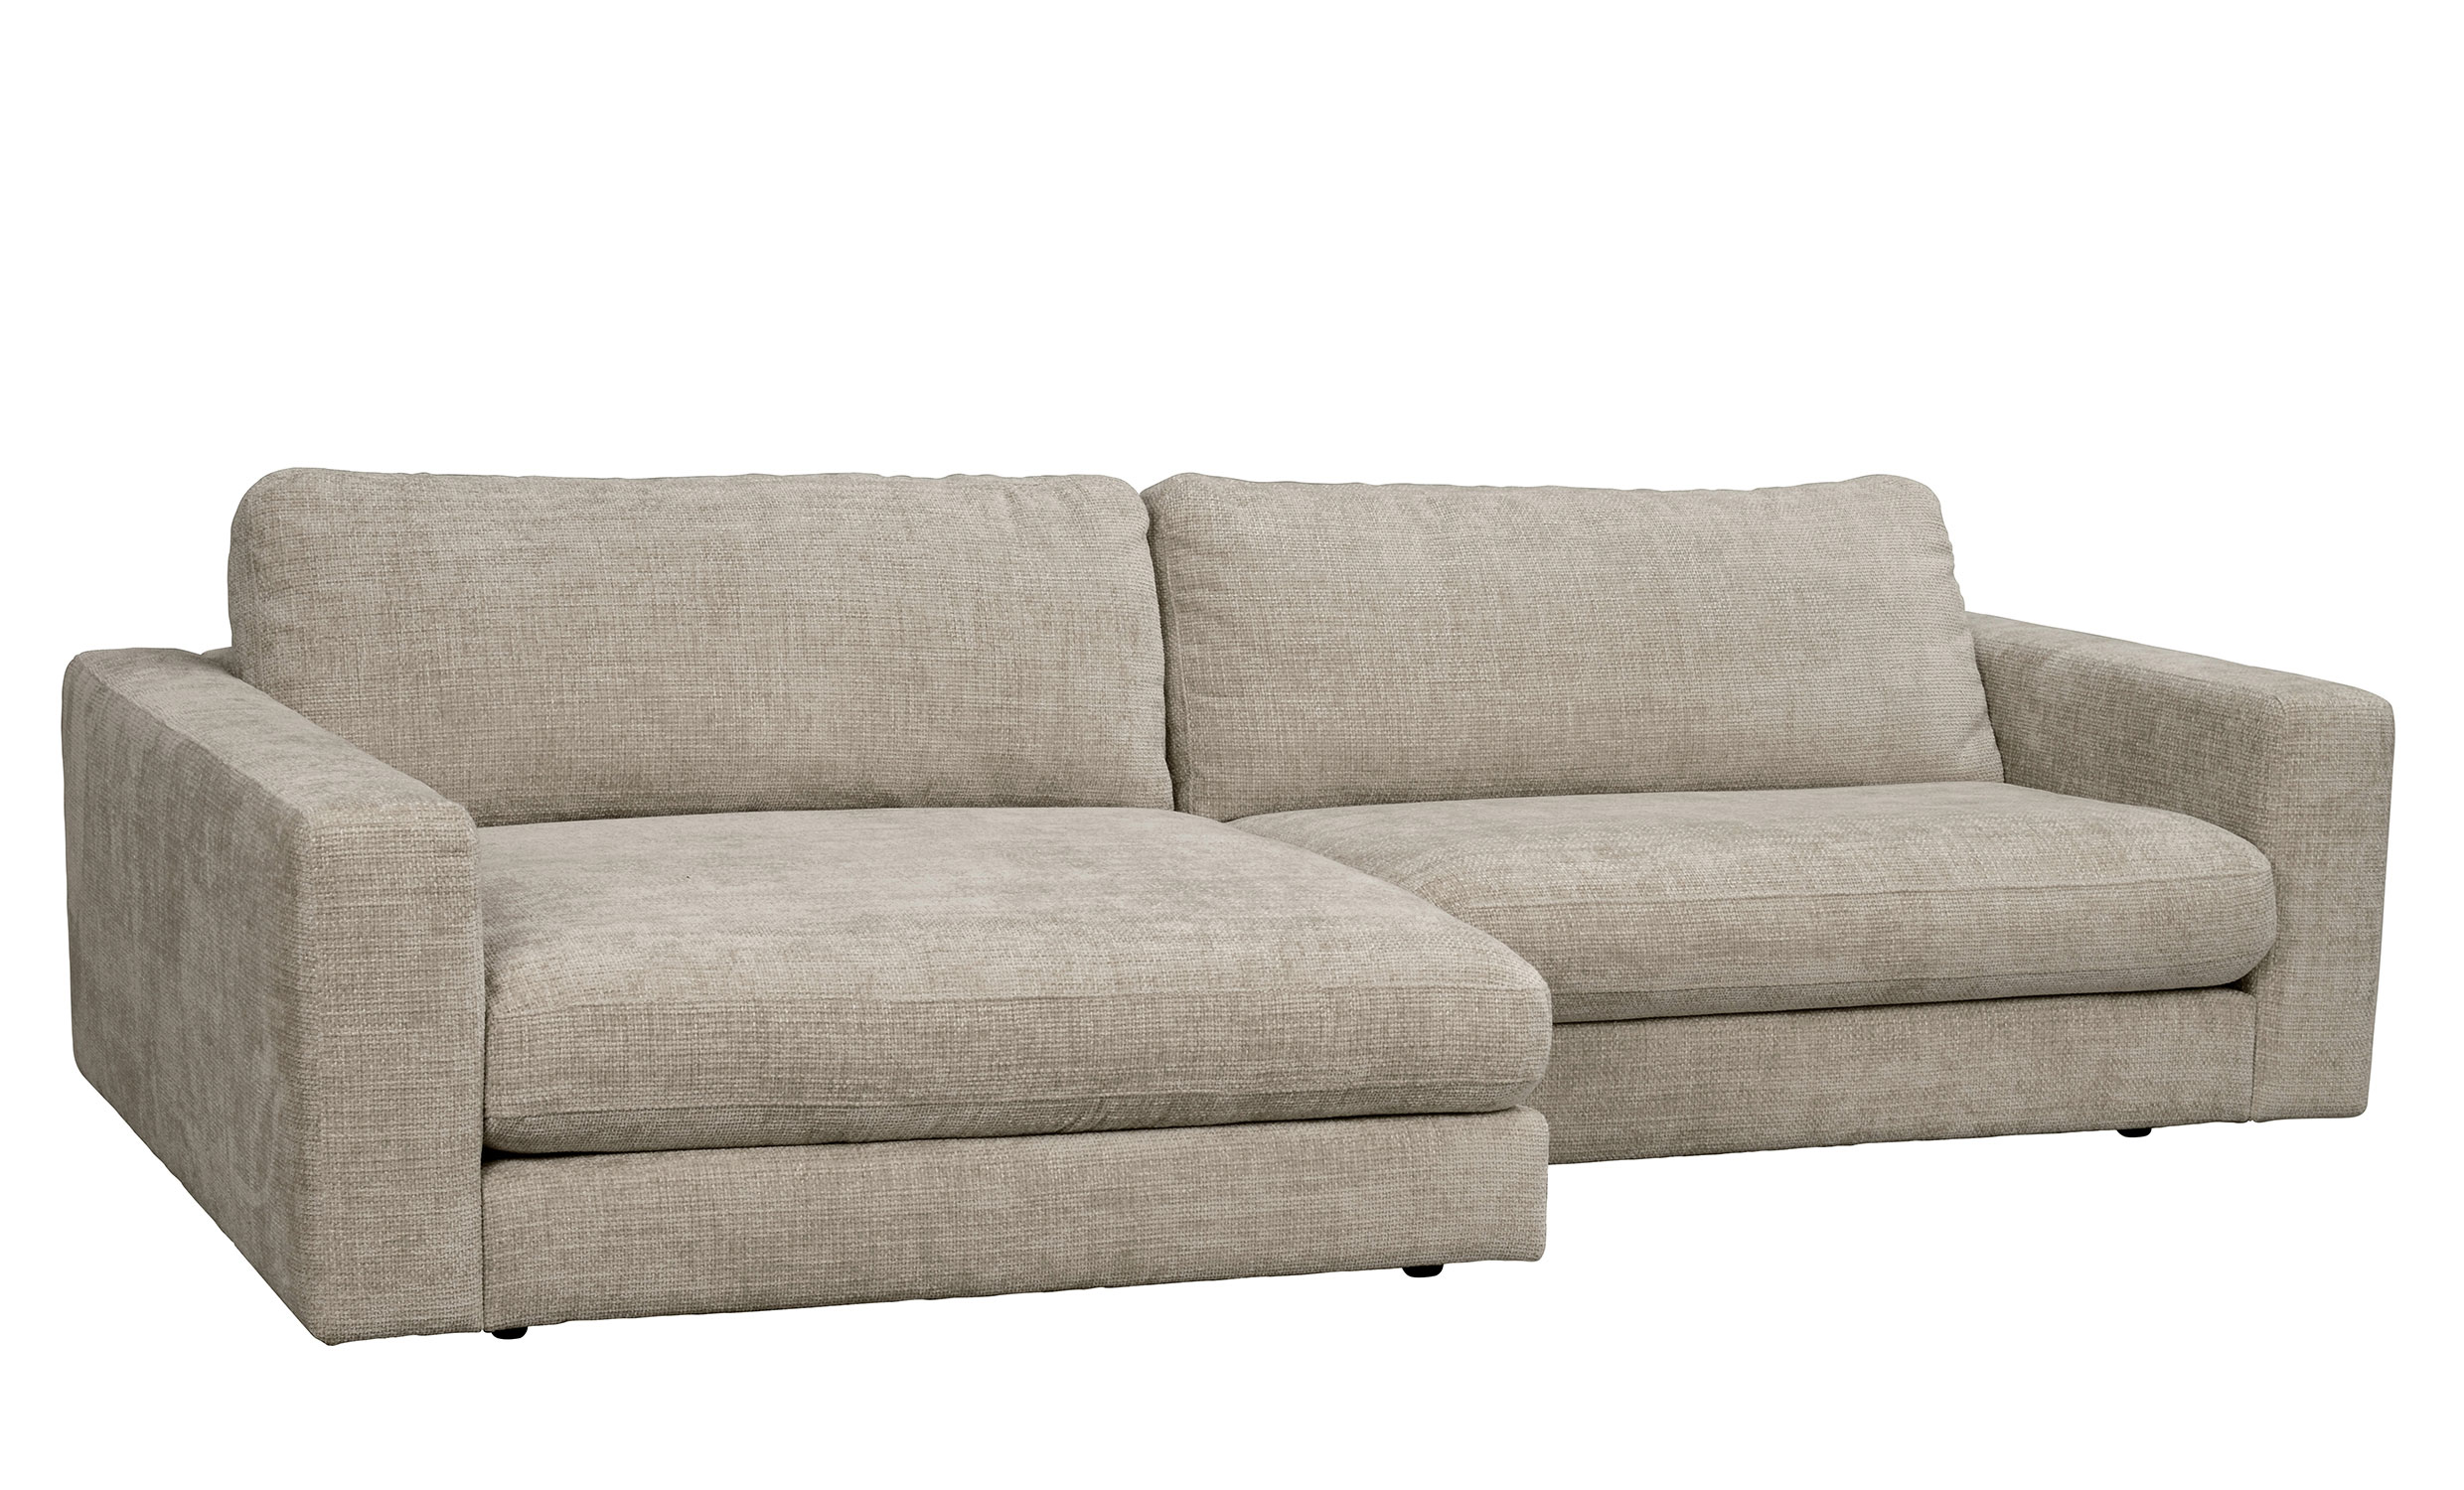 DUNCAN soffa 3-sits-schslong vnster grbeige